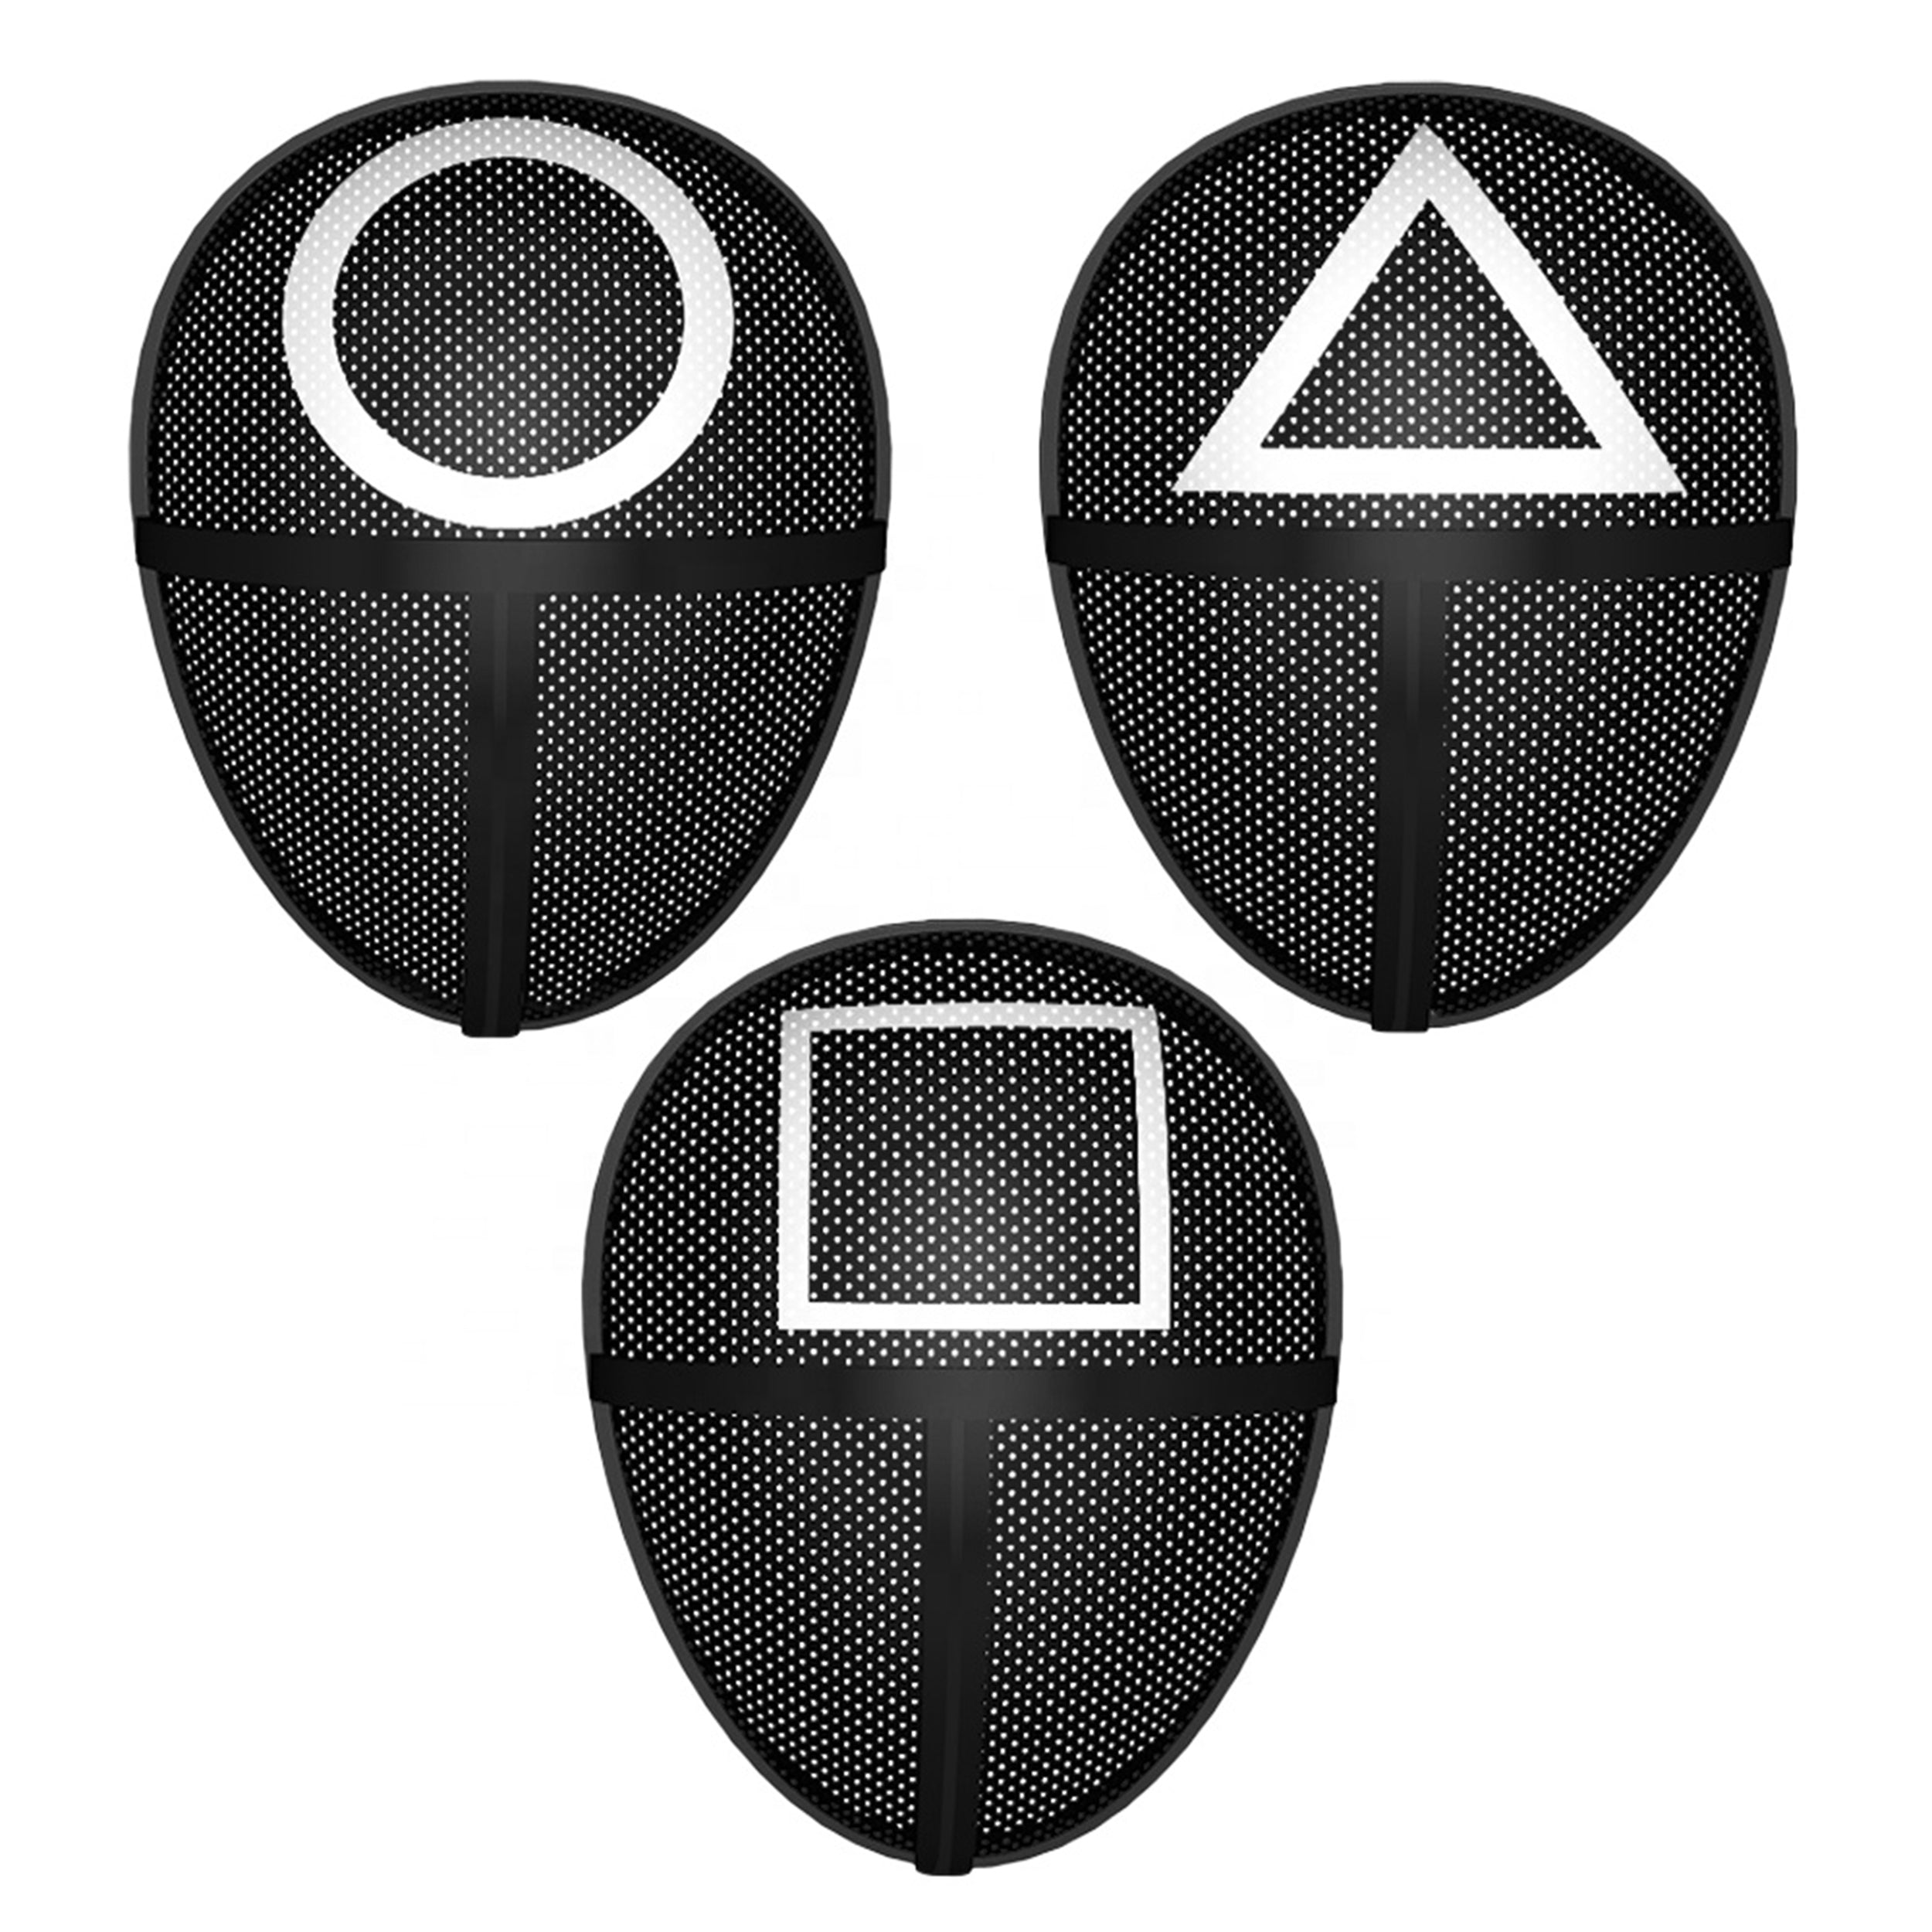 Three different pattern korean game masks